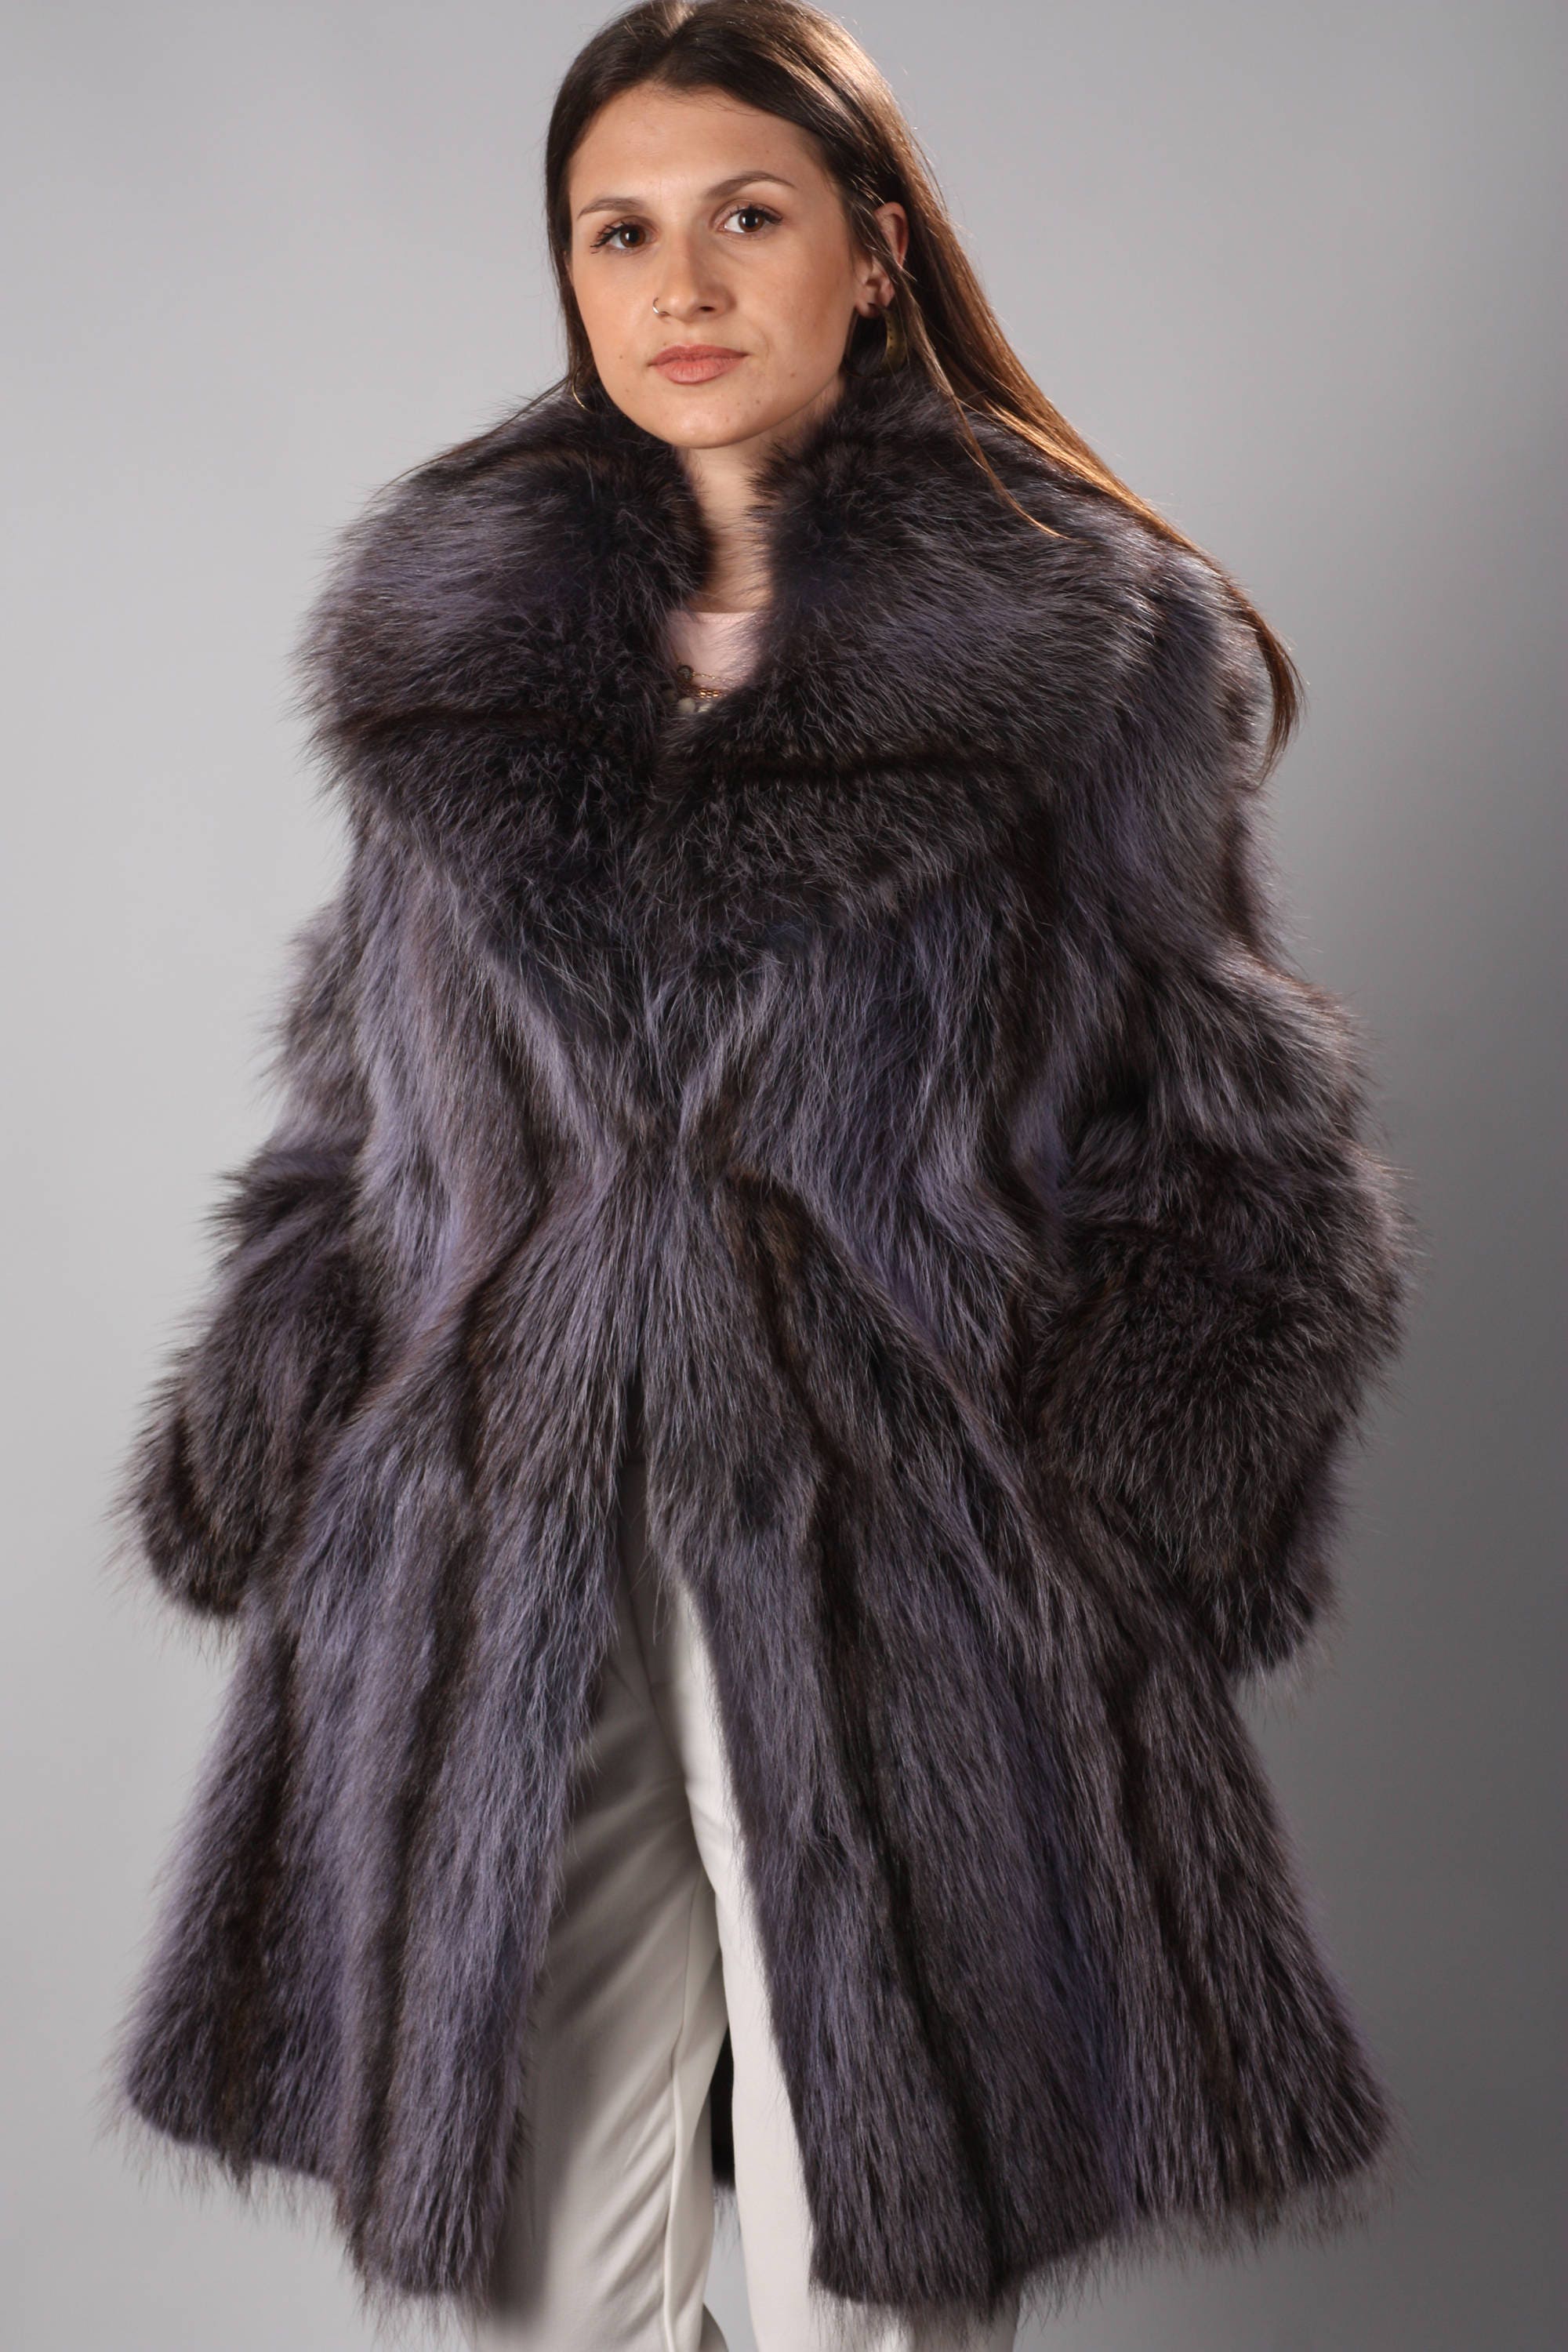 Luxury gift/Purple Raccoon Fur fur coat/Fur jacket/ Full Skin | Etsy